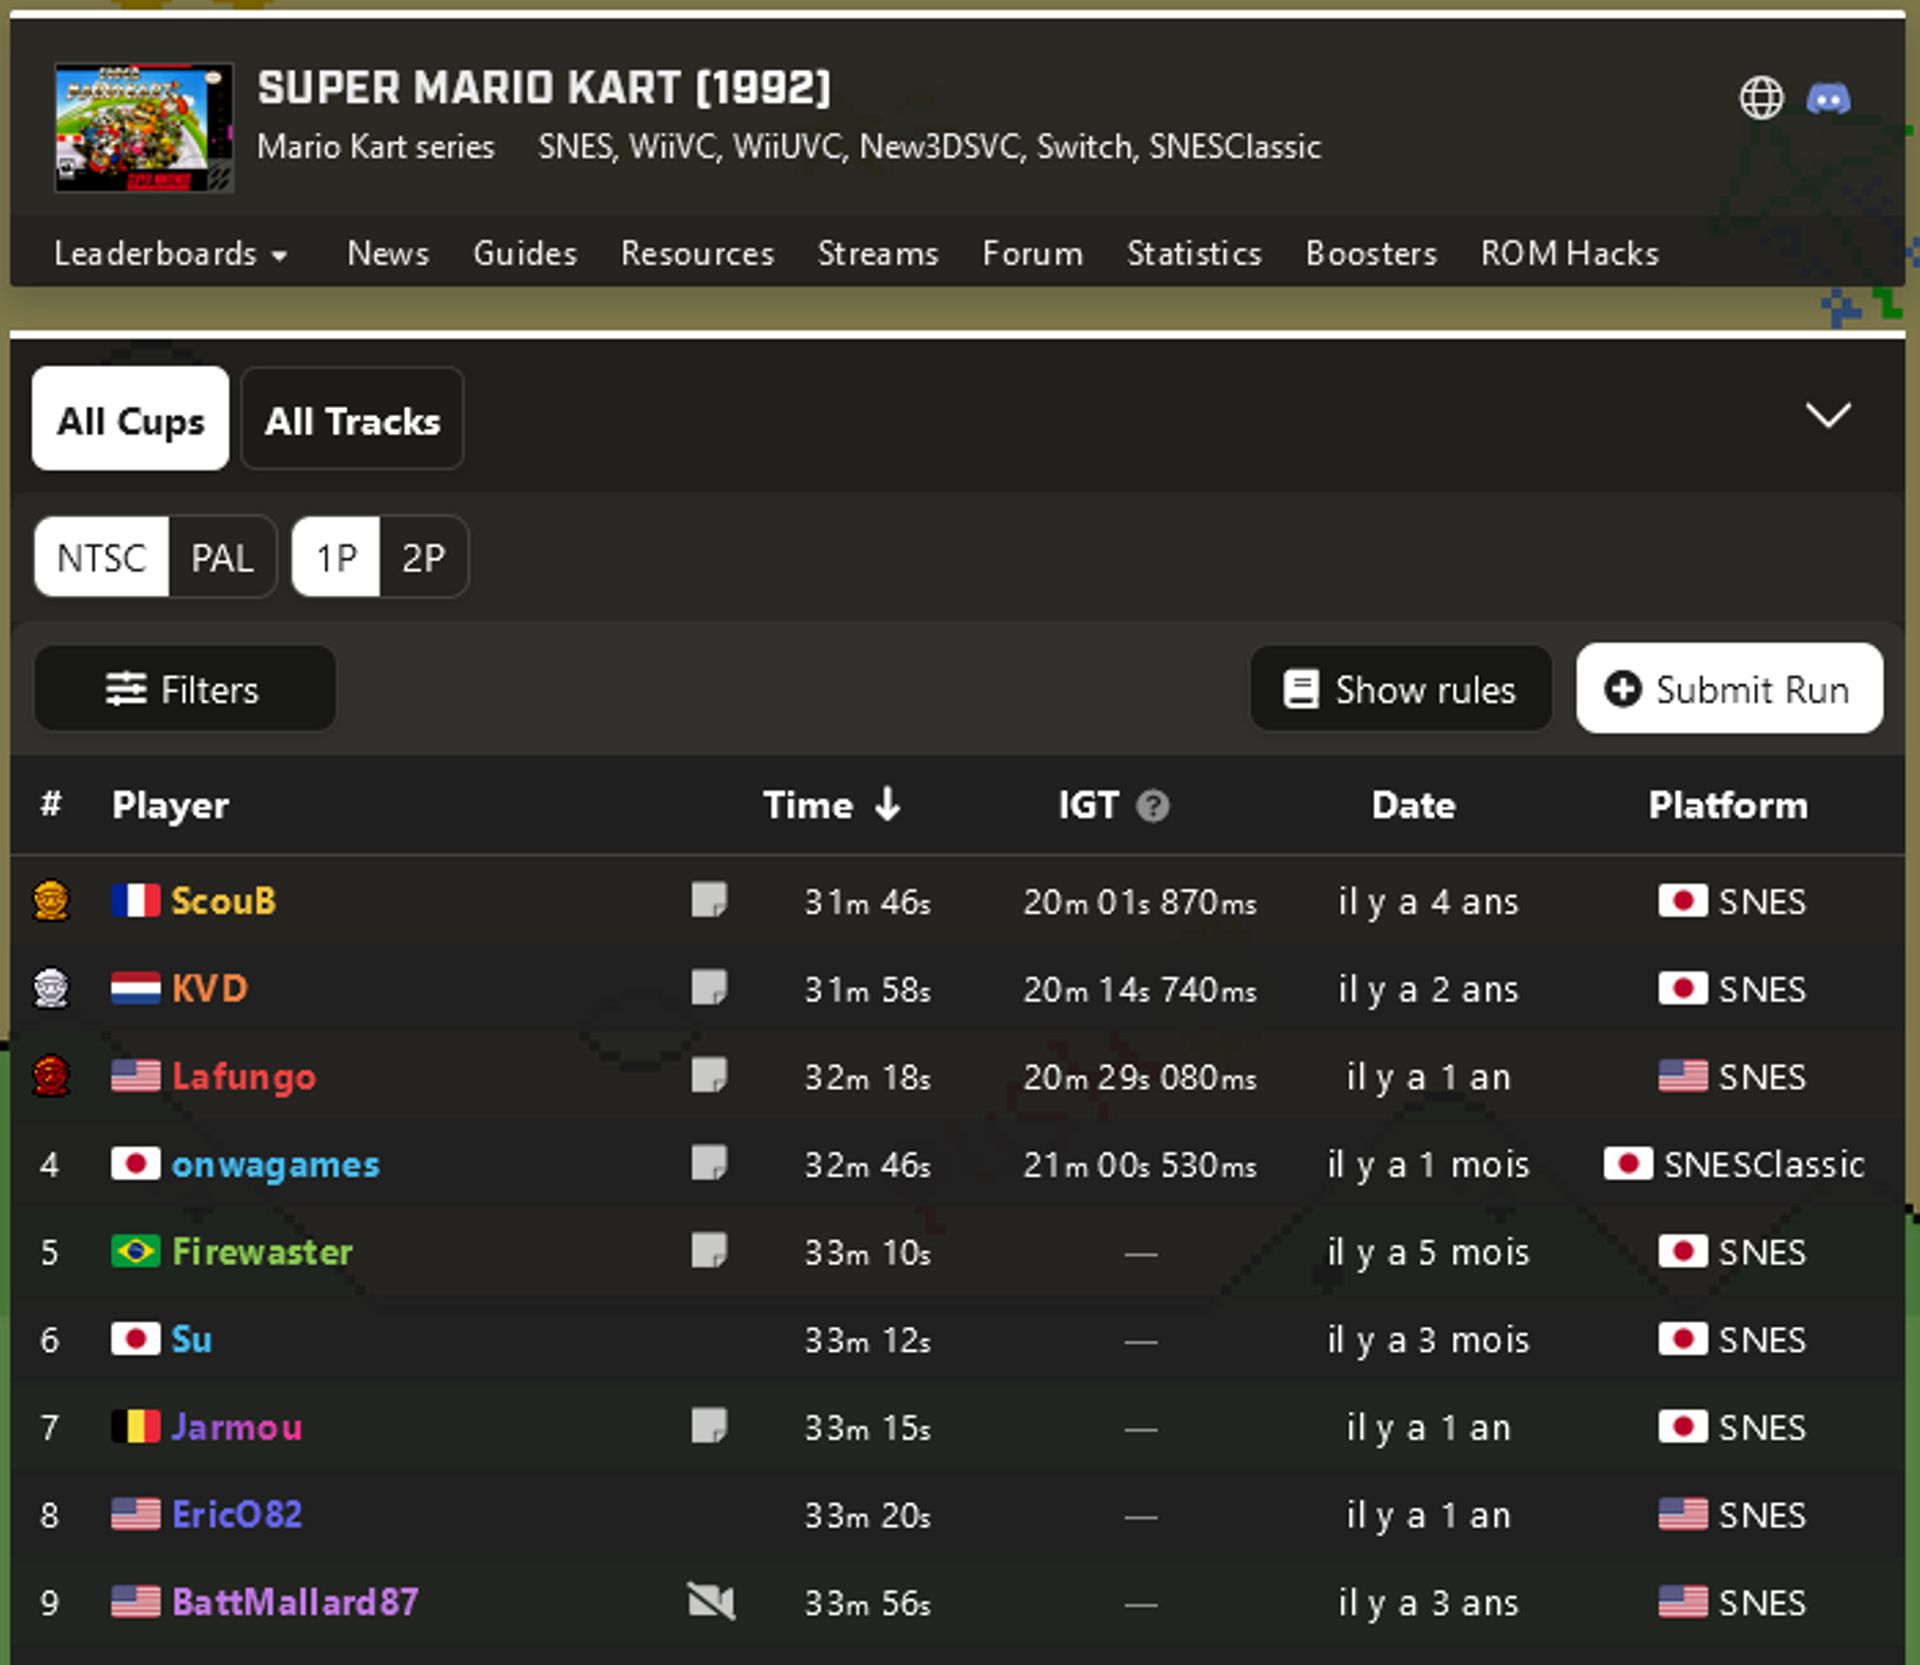 Jarm0u est à la 7e place mondiale sur Super Mario Kart et est répertoriée sur le site officiel Speedrun.com ! |